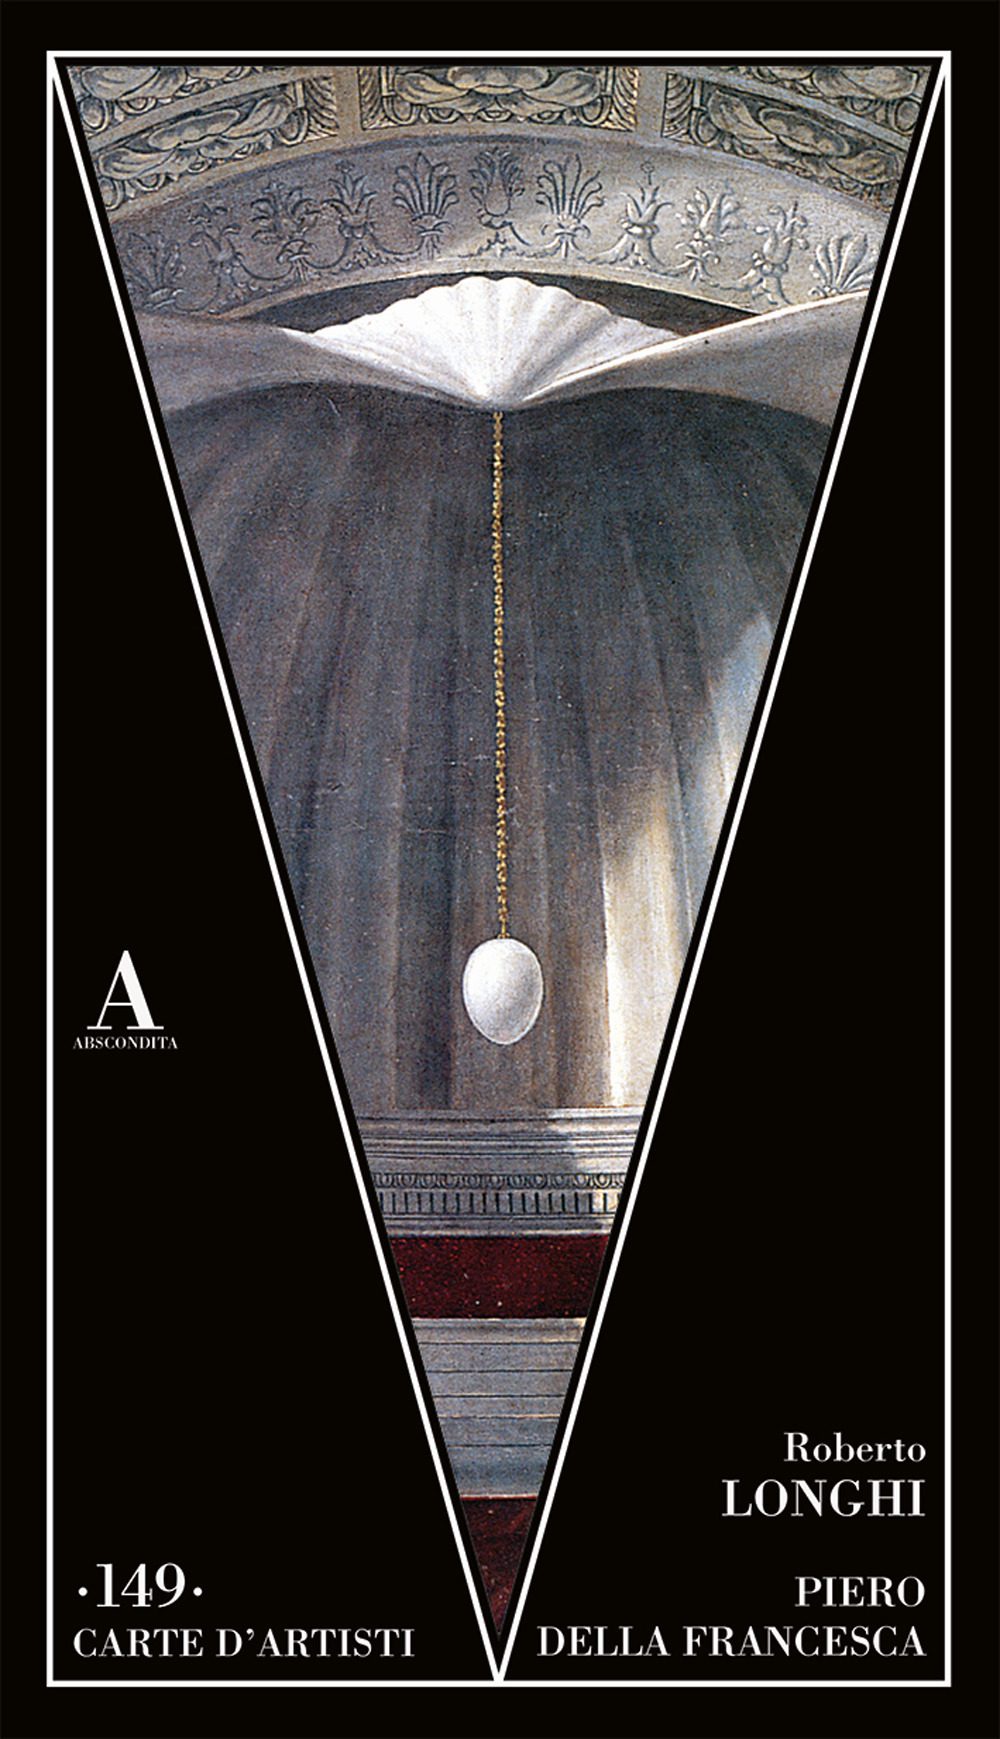 Libri Roberto Longhi - Piero Della Francesca NUOVO SIGILLATO, EDIZIONE DEL 19/07/2022 SUBITO DISPONIBILE